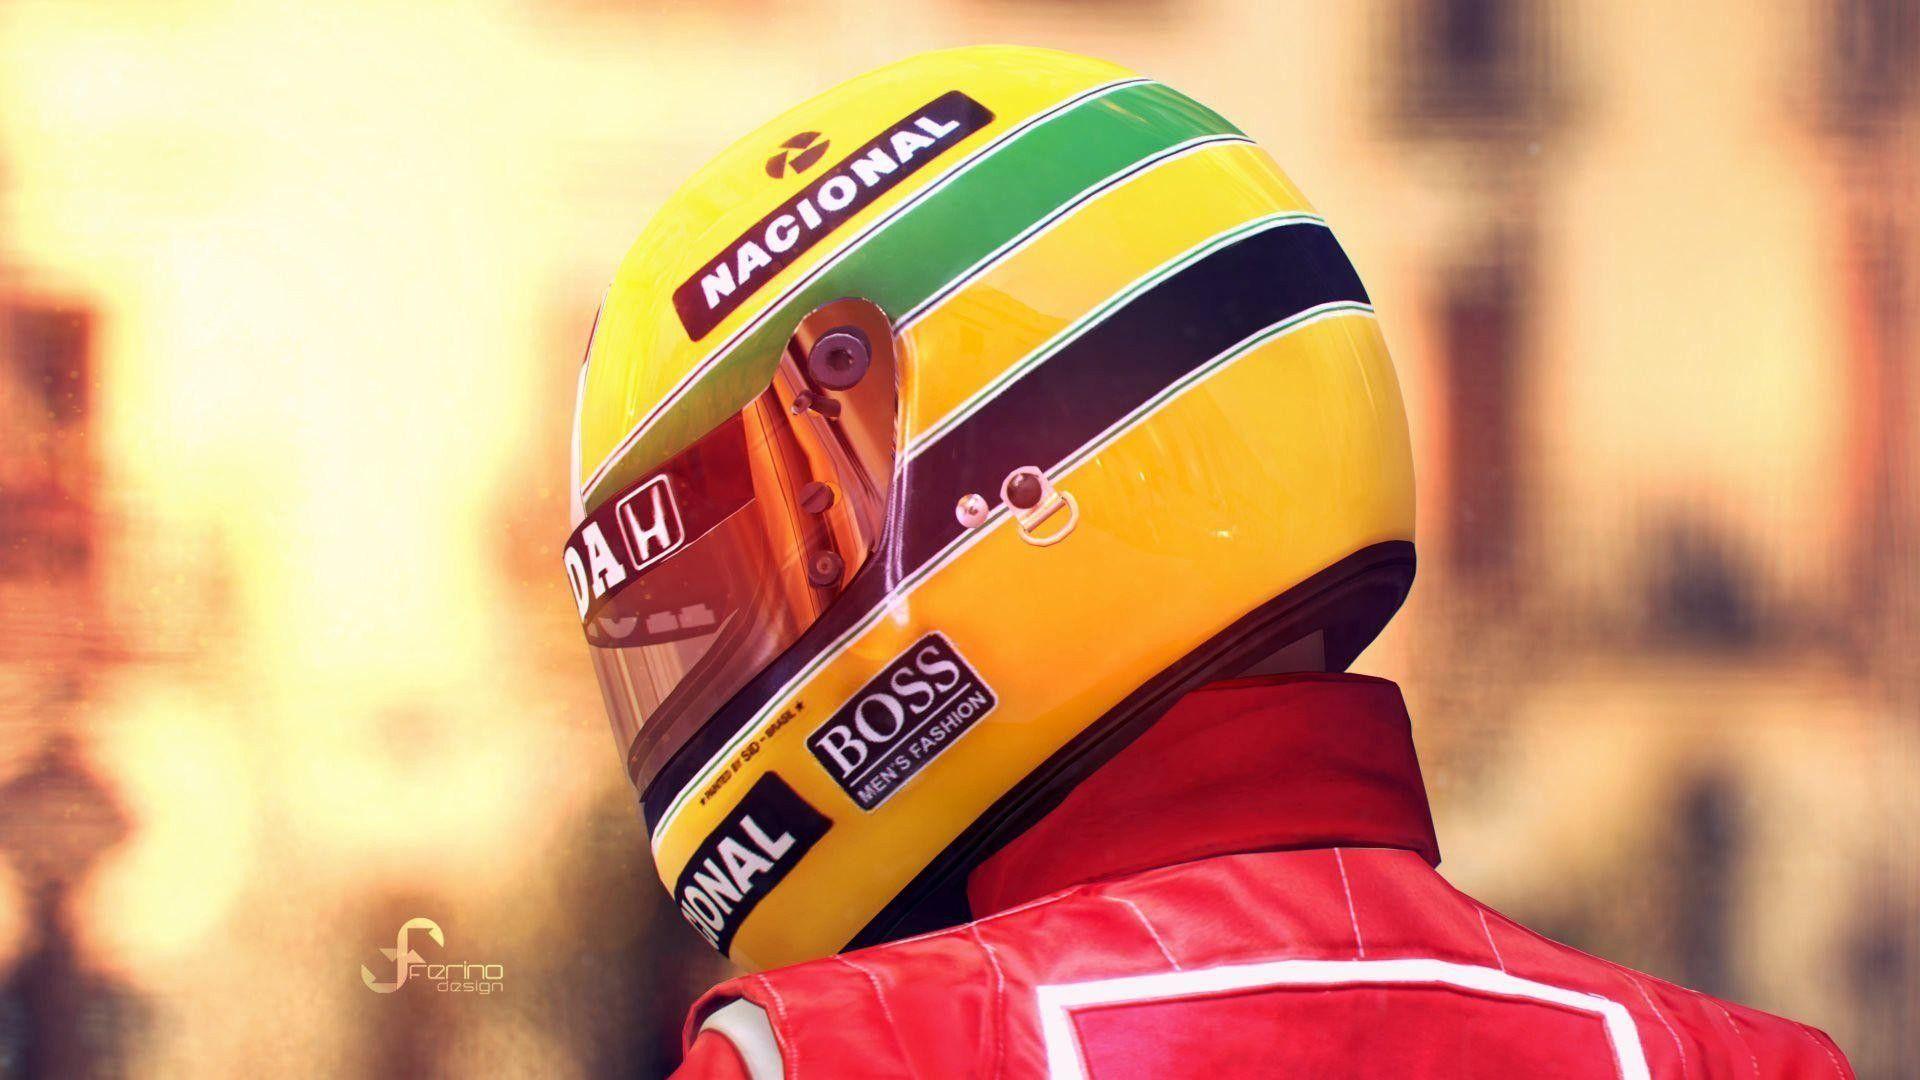 1920x1080 Ayrton Senna hình nền